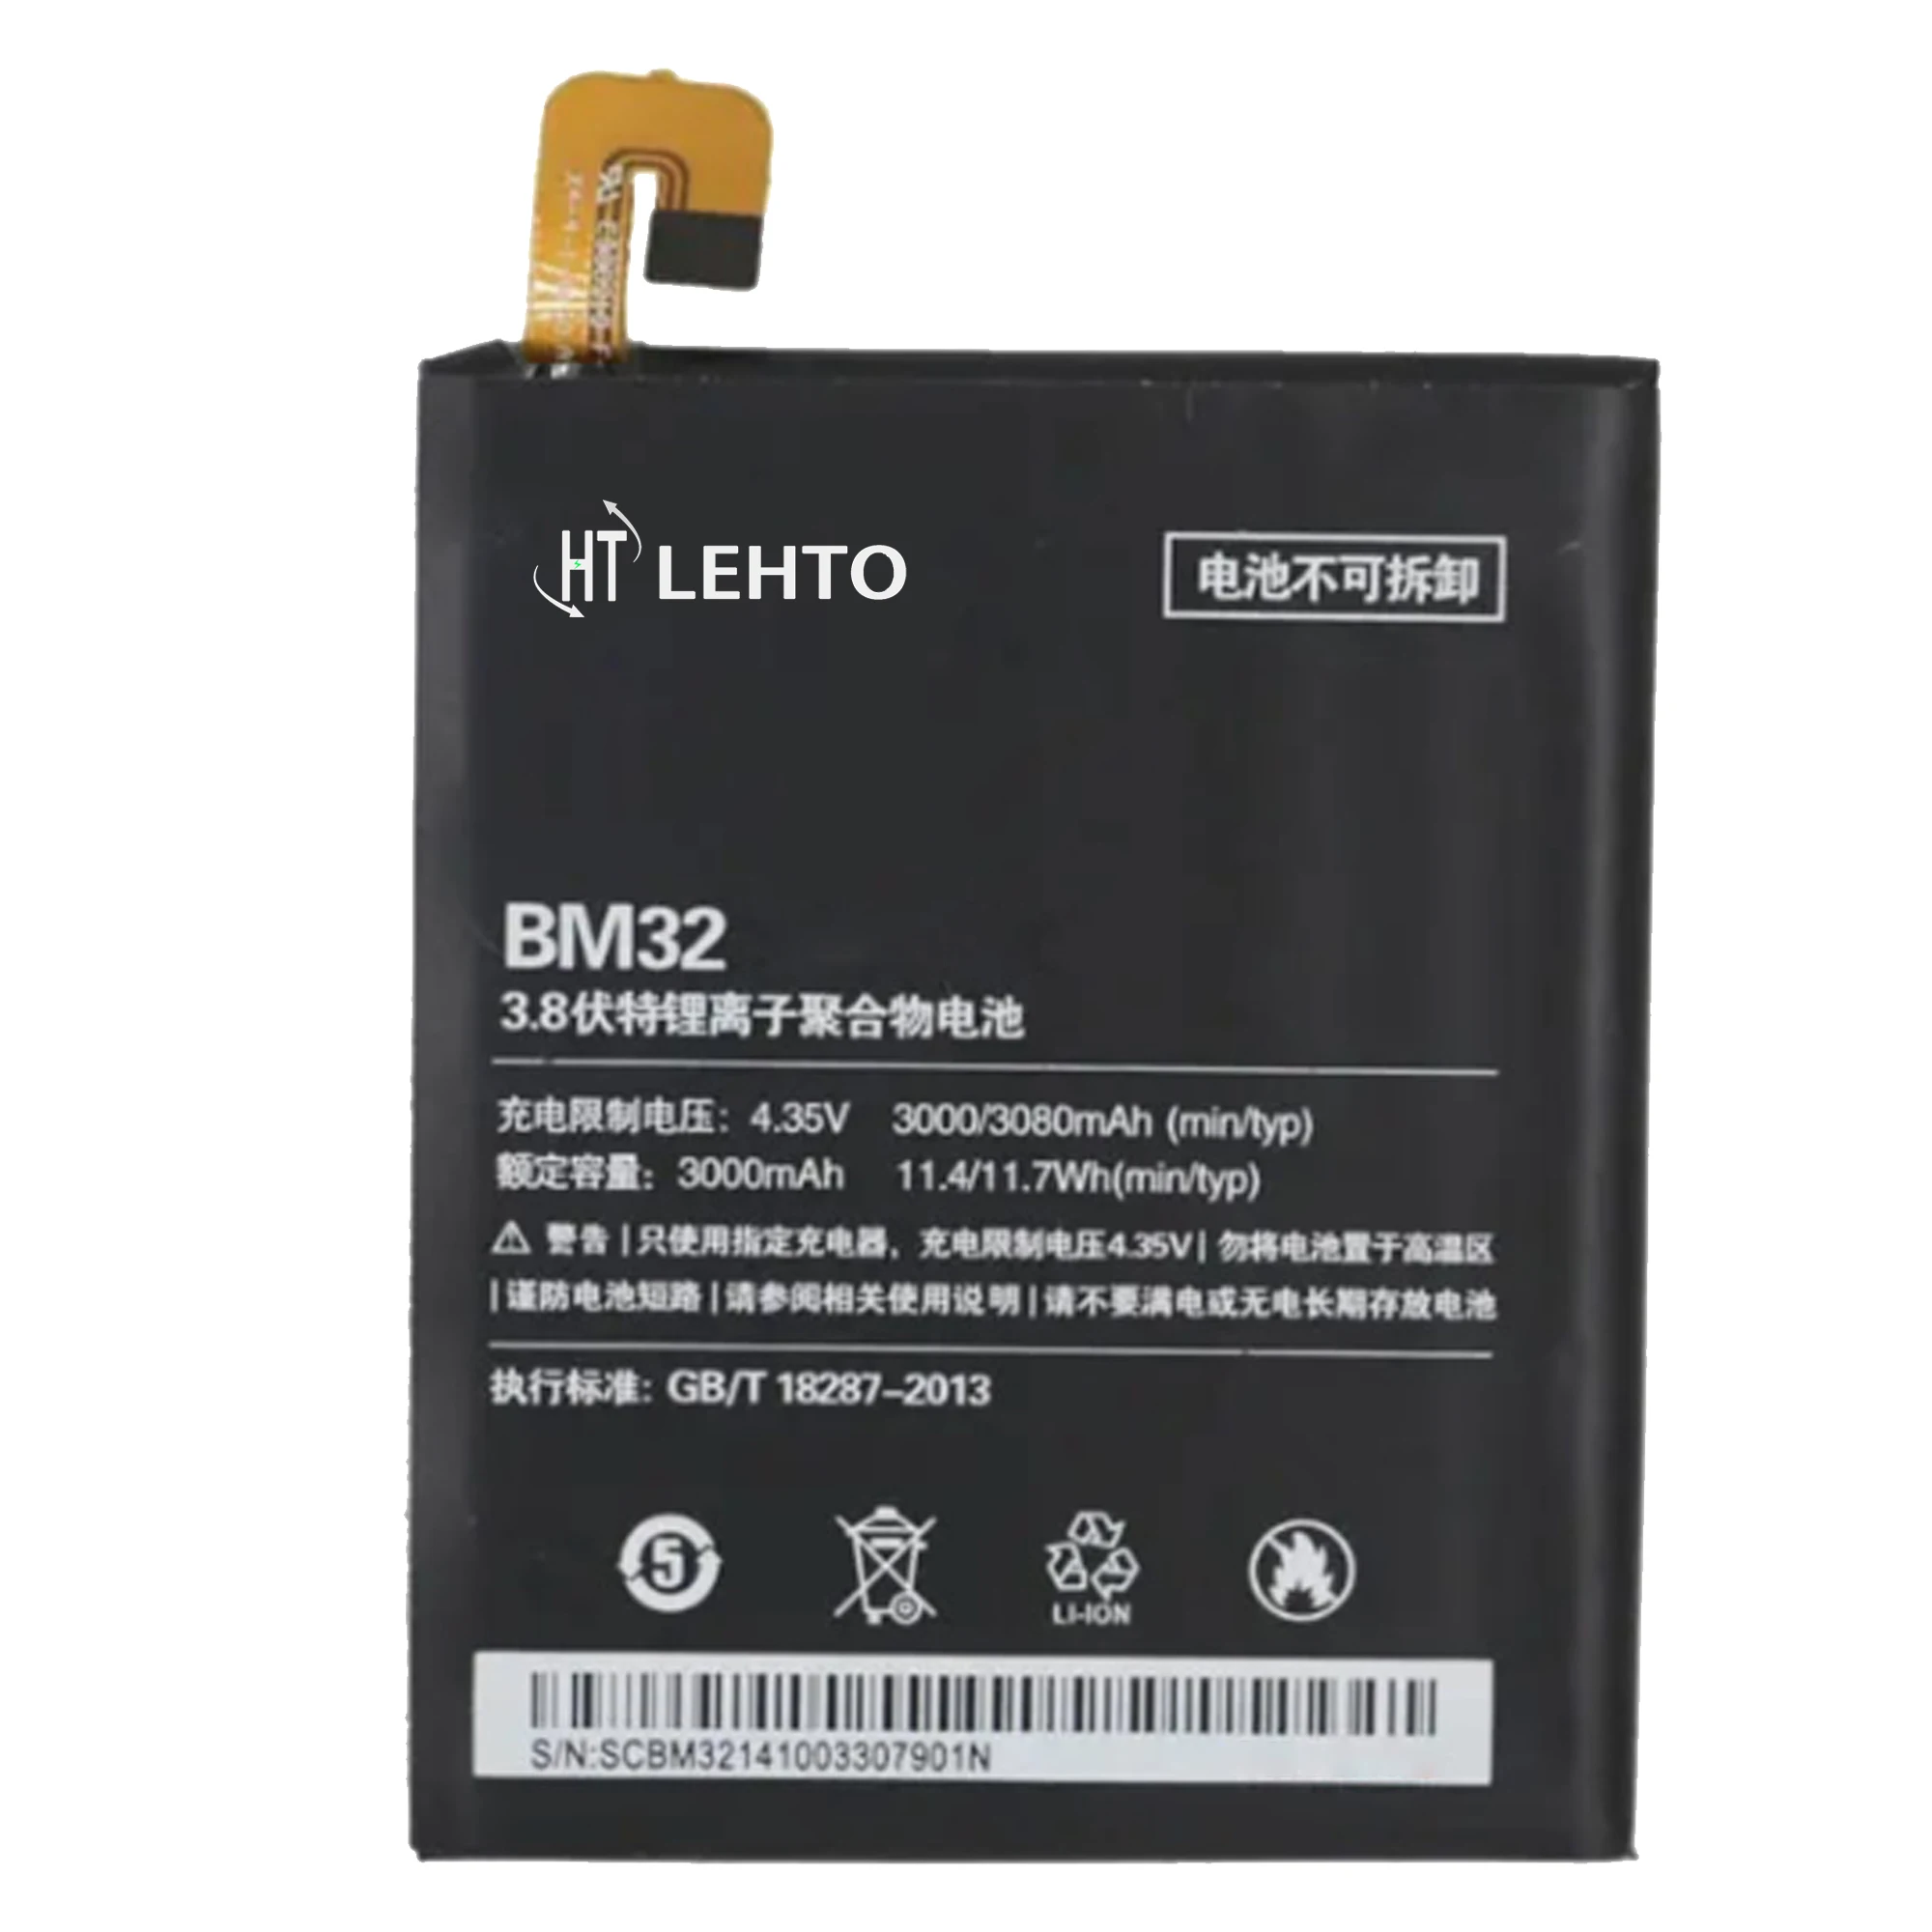 BM32 Battery For Xiaomi Mi 4 / MI4 Original Capacity Mobile Phone Replace High Capacity Bateria enlarge